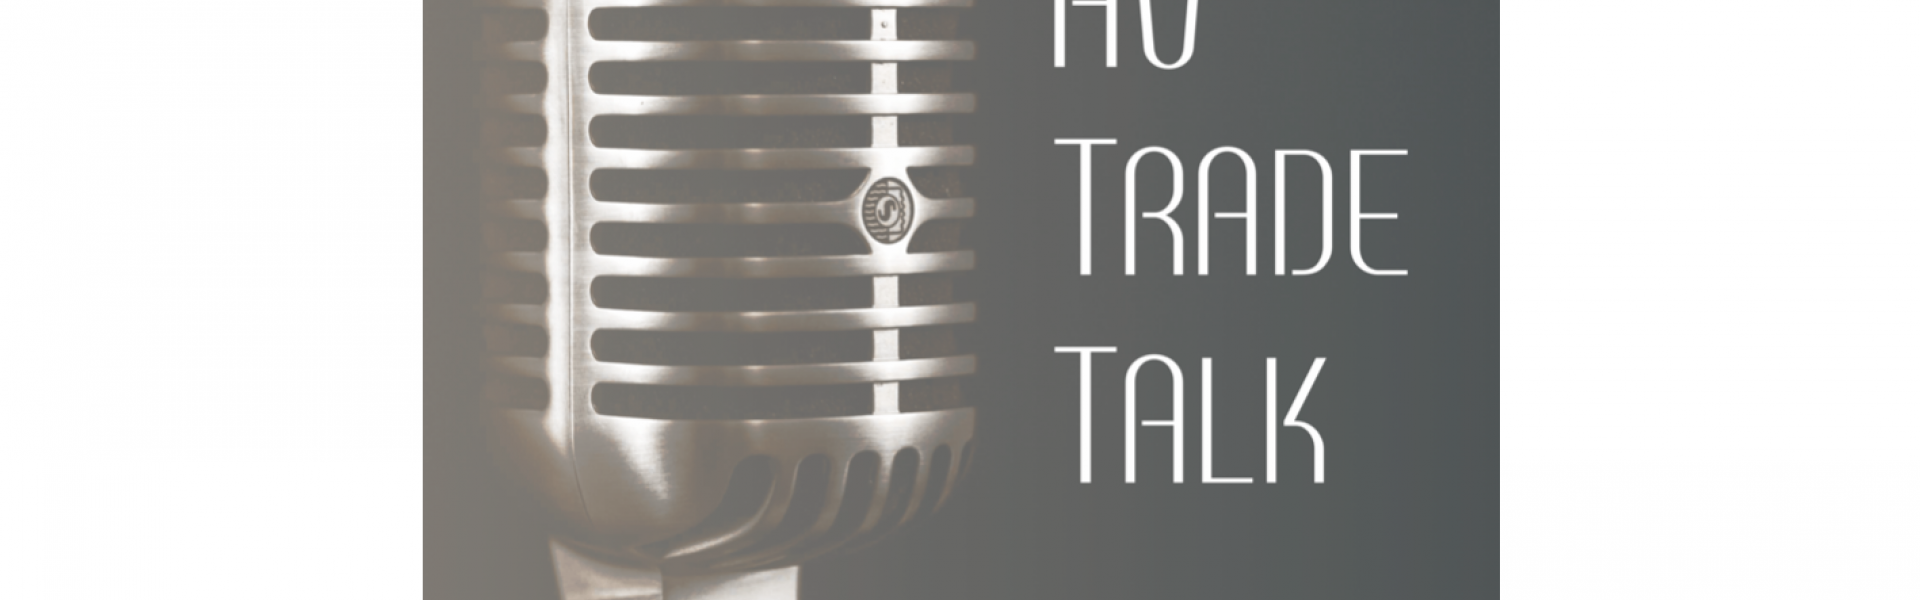 AV Trade Talk Podcast - June 2019